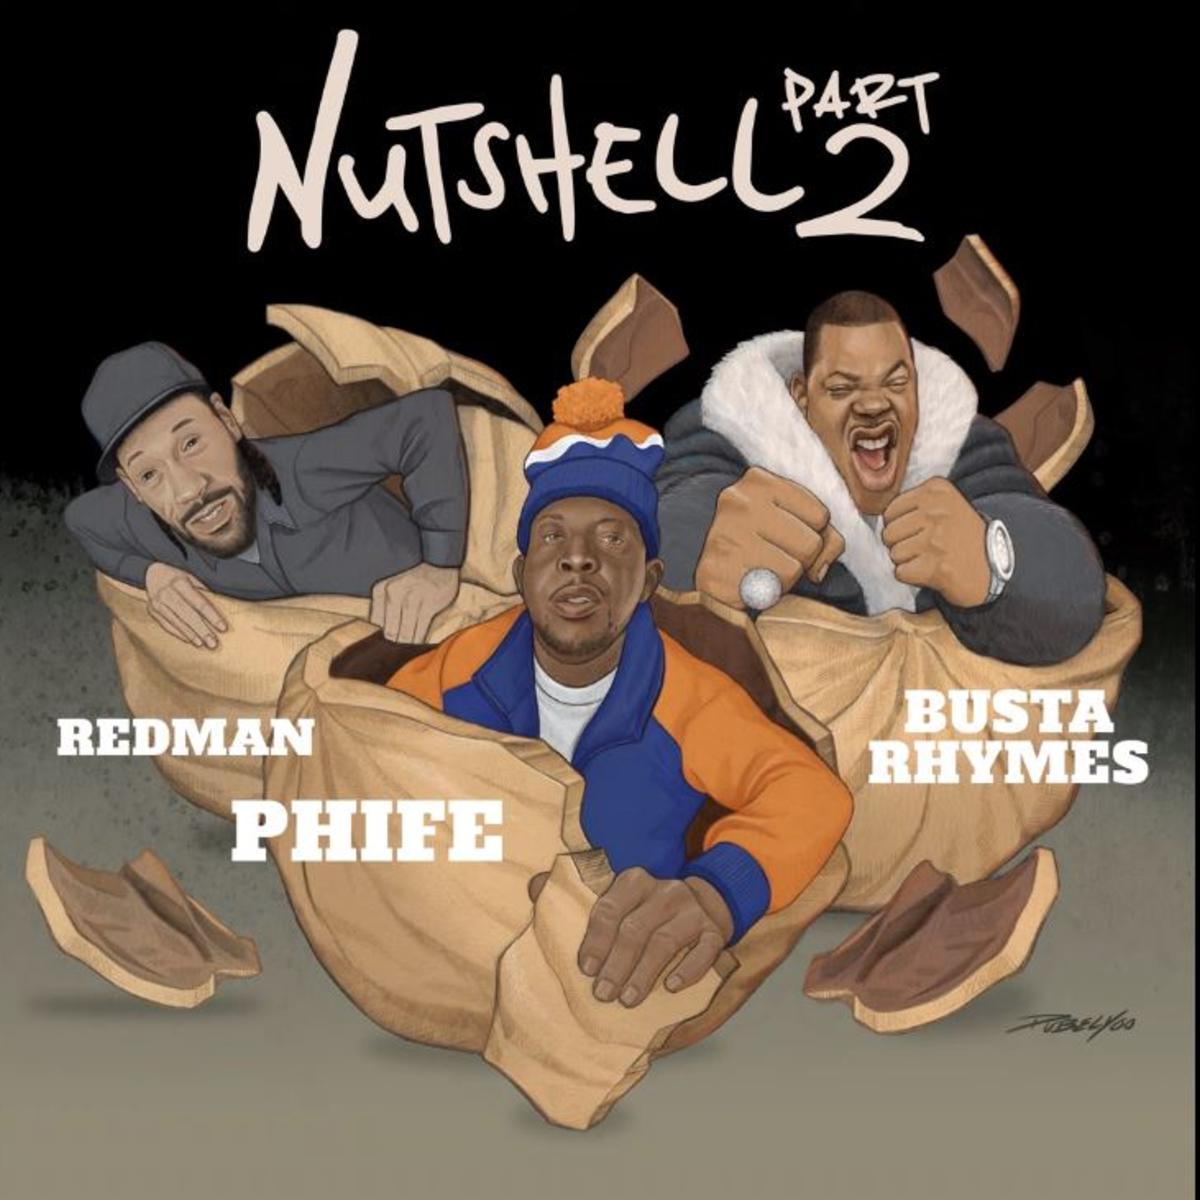 Busta Rhymes, Redman & Phife Dawg Collide On “Nutshell 2”